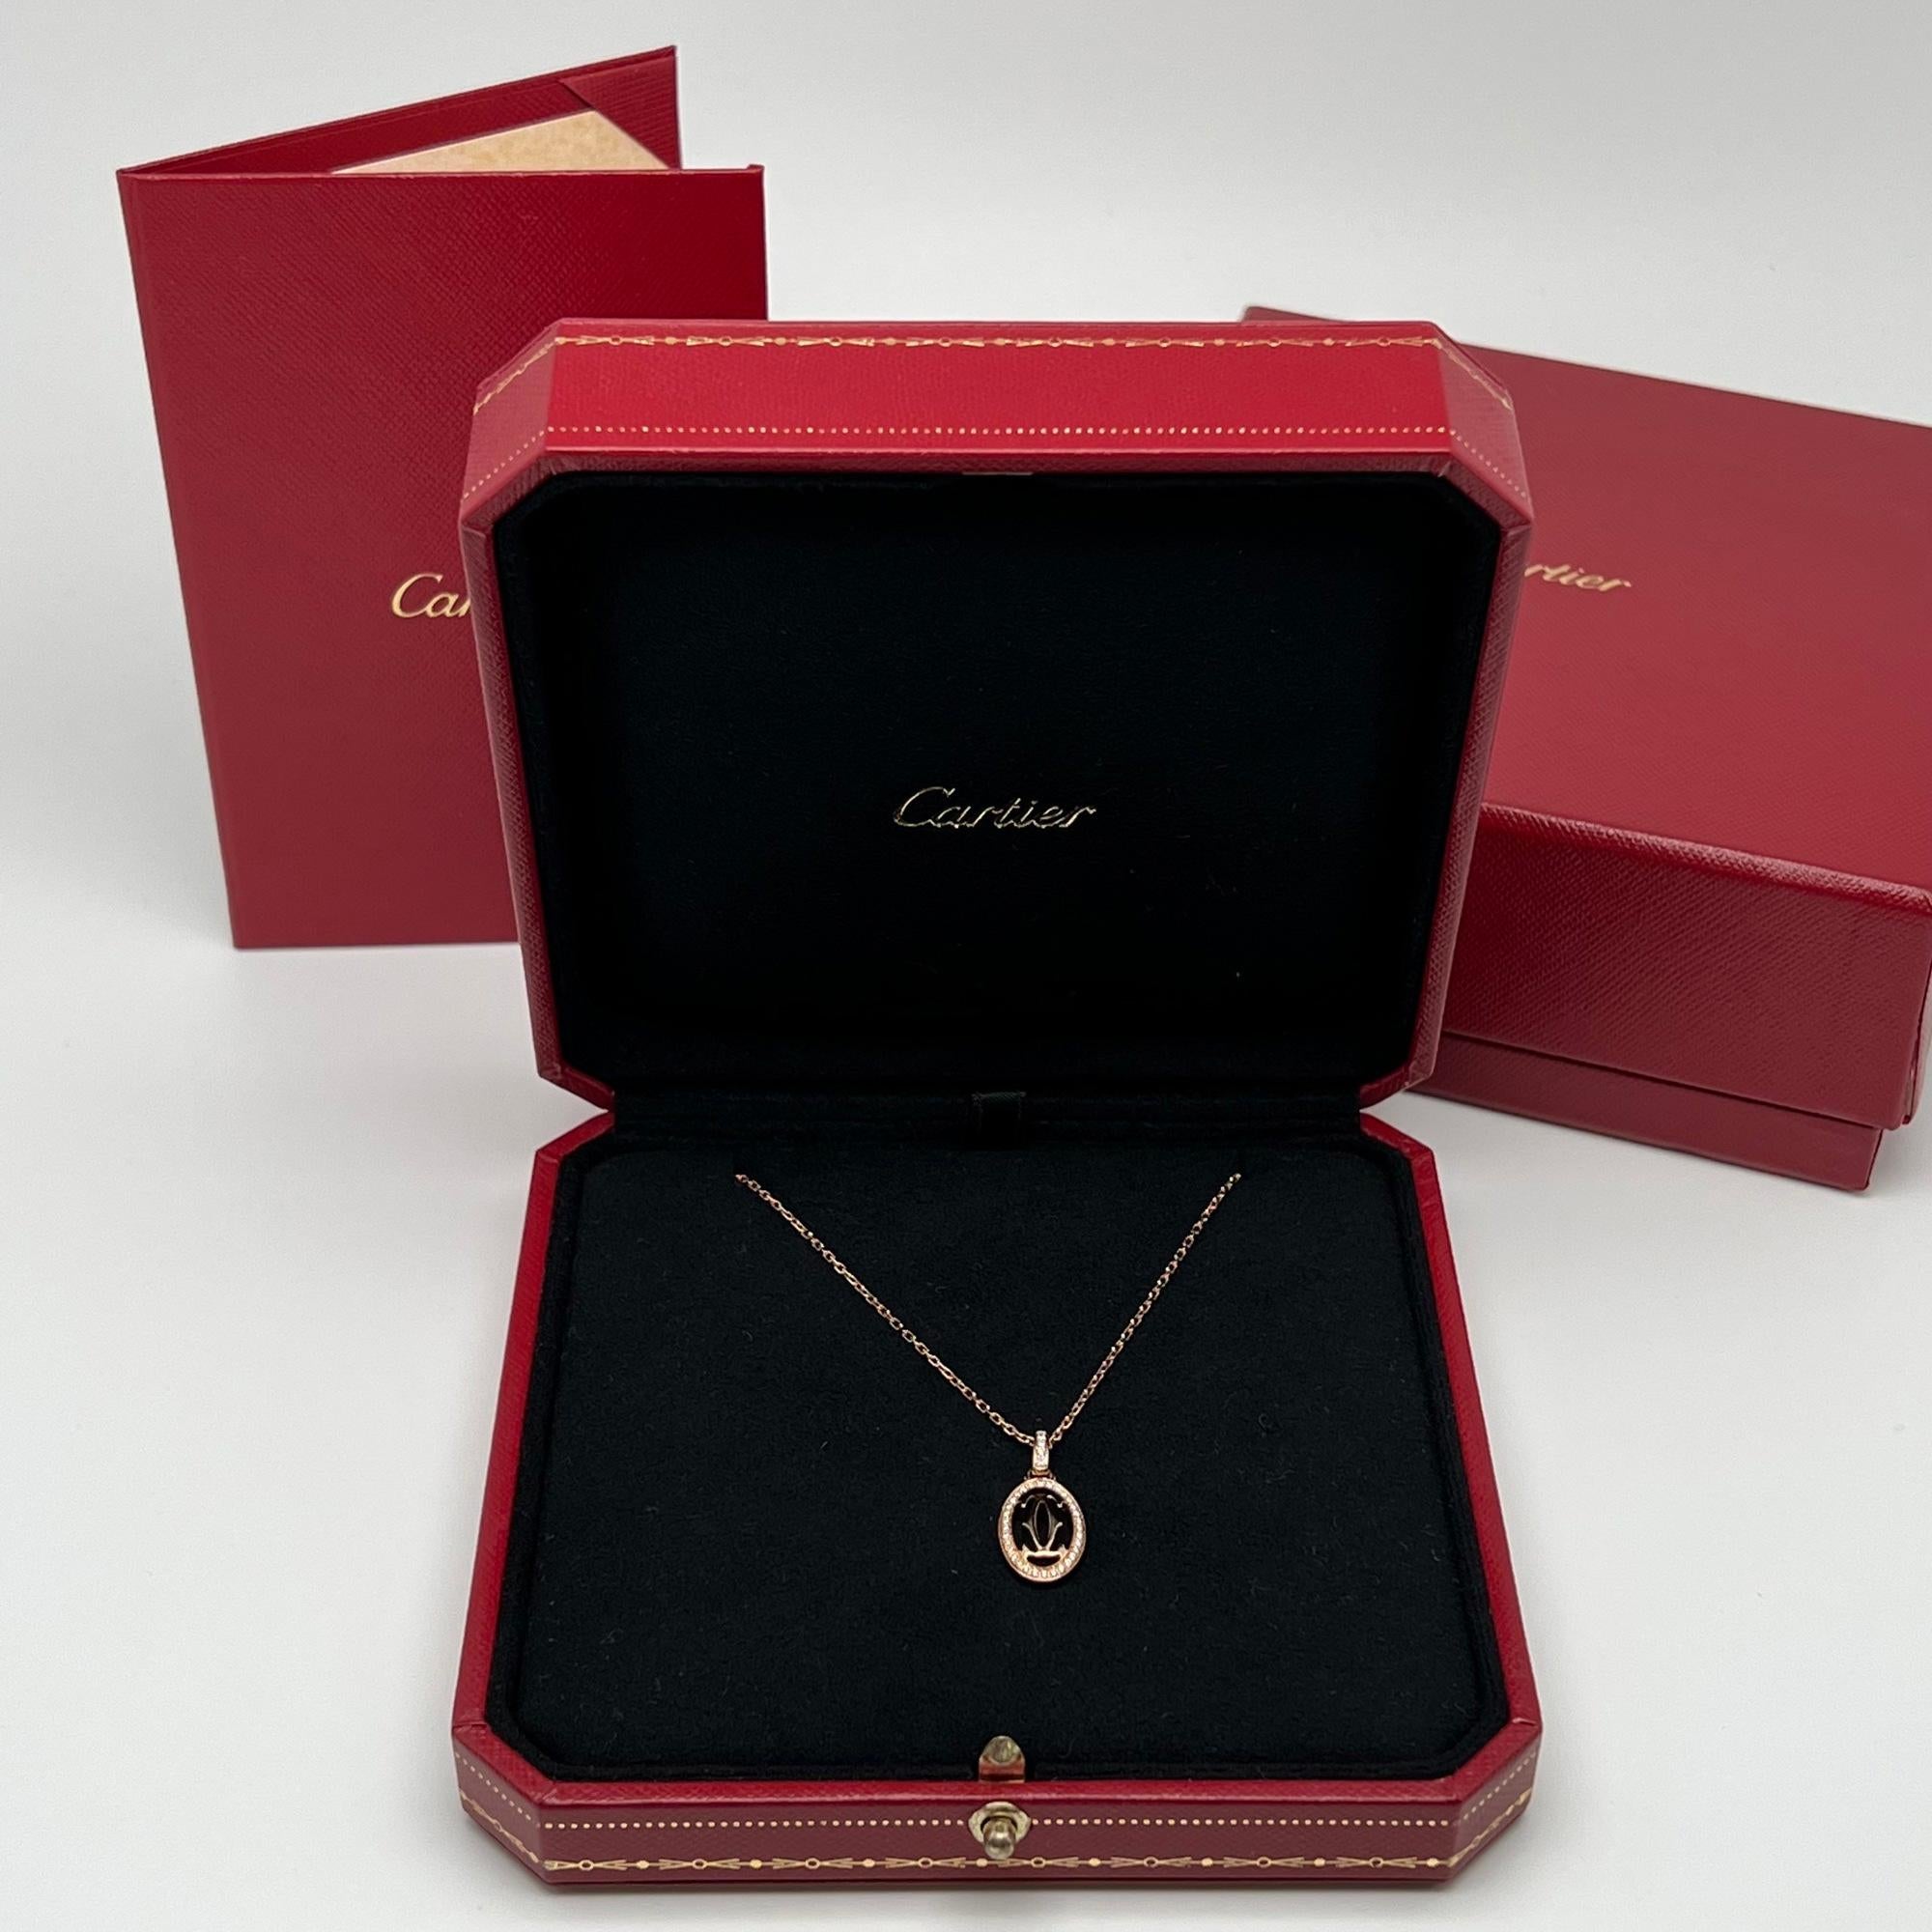 Modern Cartier Double C De Cartier Diamond Logo Pendant Necklace 18k Rose Gold 0.10cttw For Sale